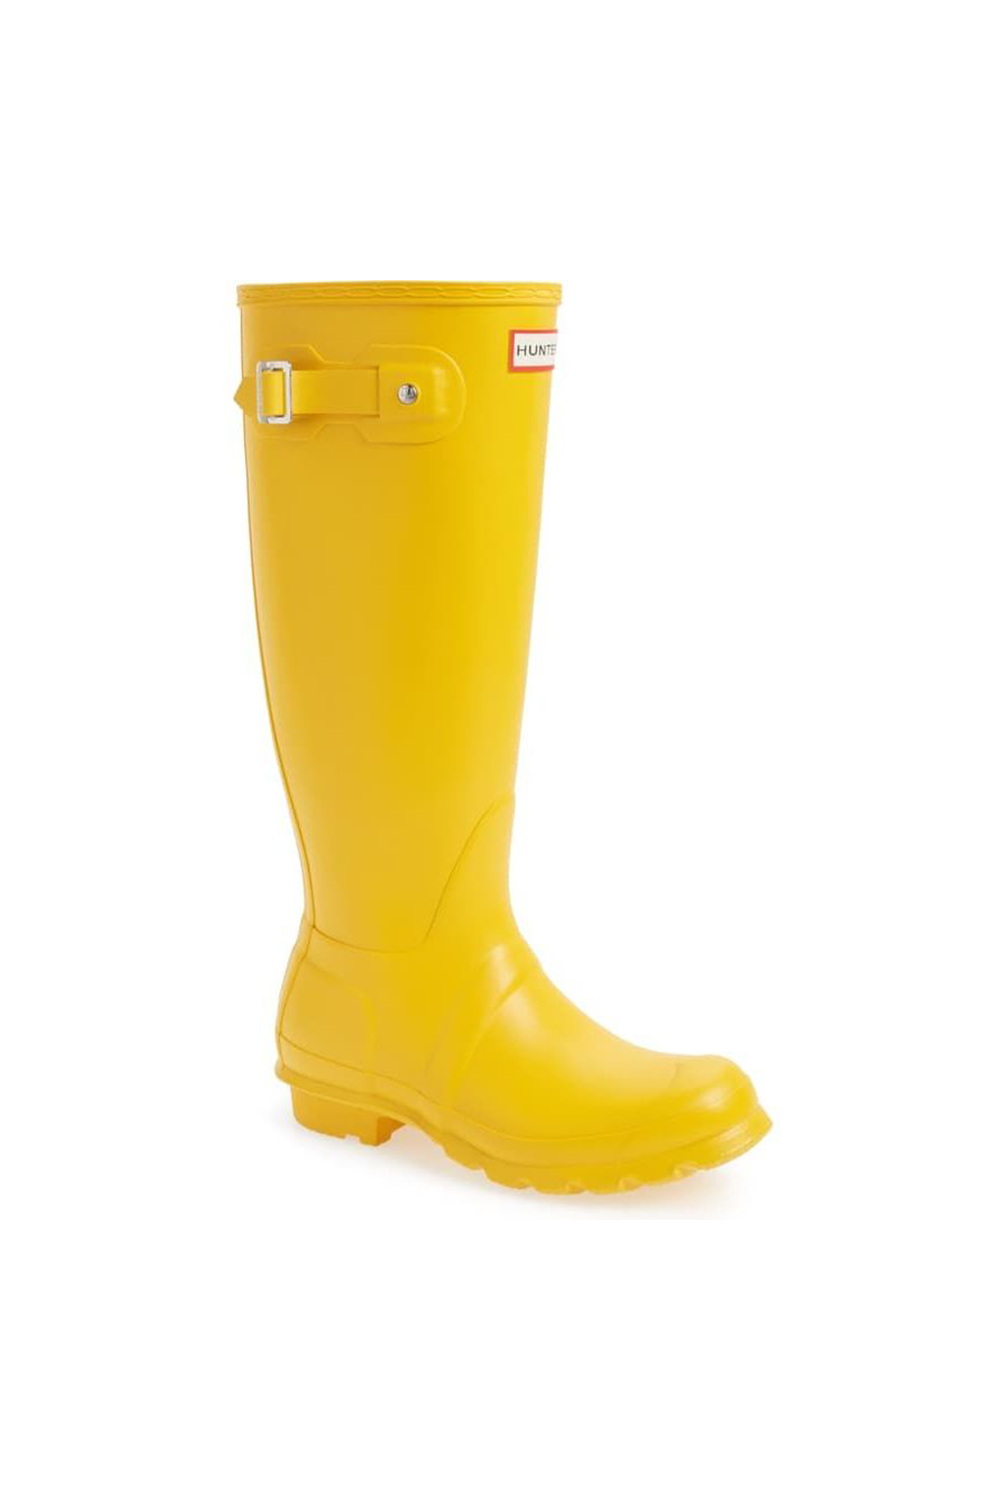 14 Best Rain Boots For Women 2020 